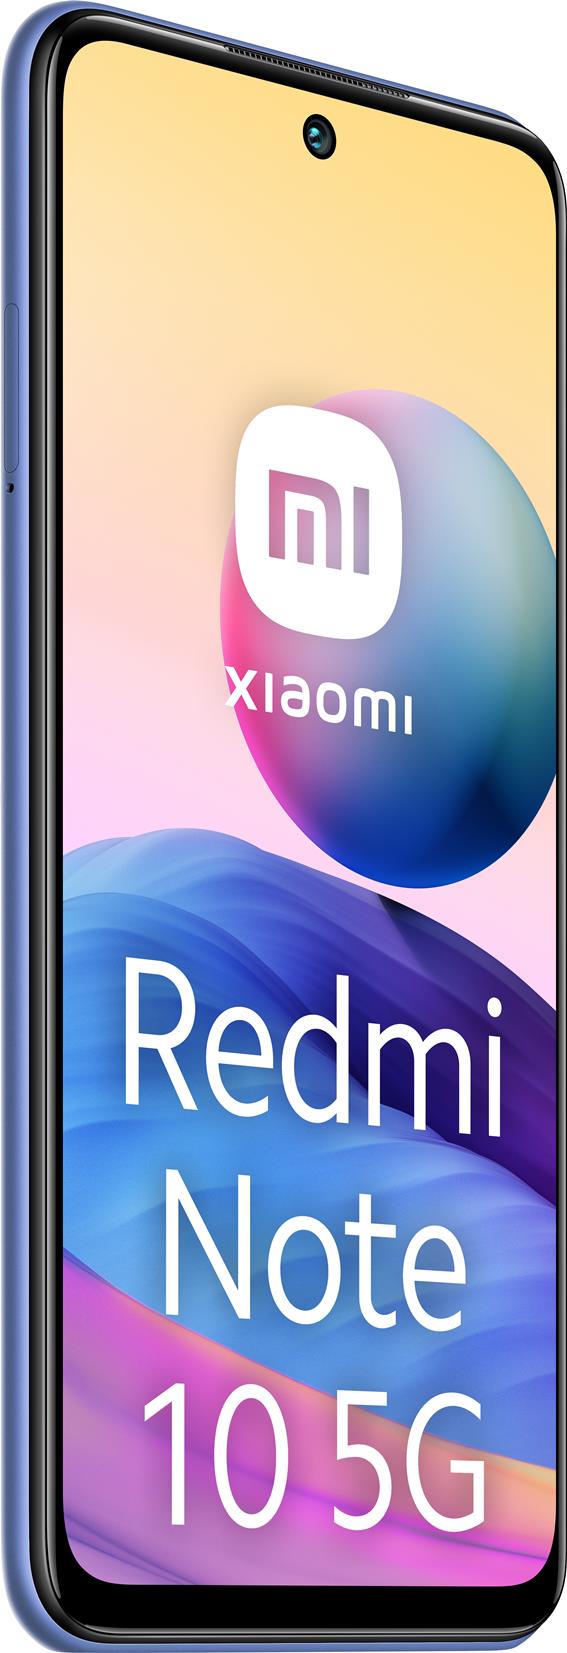 RE-9510K19X0001-PQ smartphone reacondicionado xiaomi redmi note 10 5g 4gb ram 64gb rom blue grado a